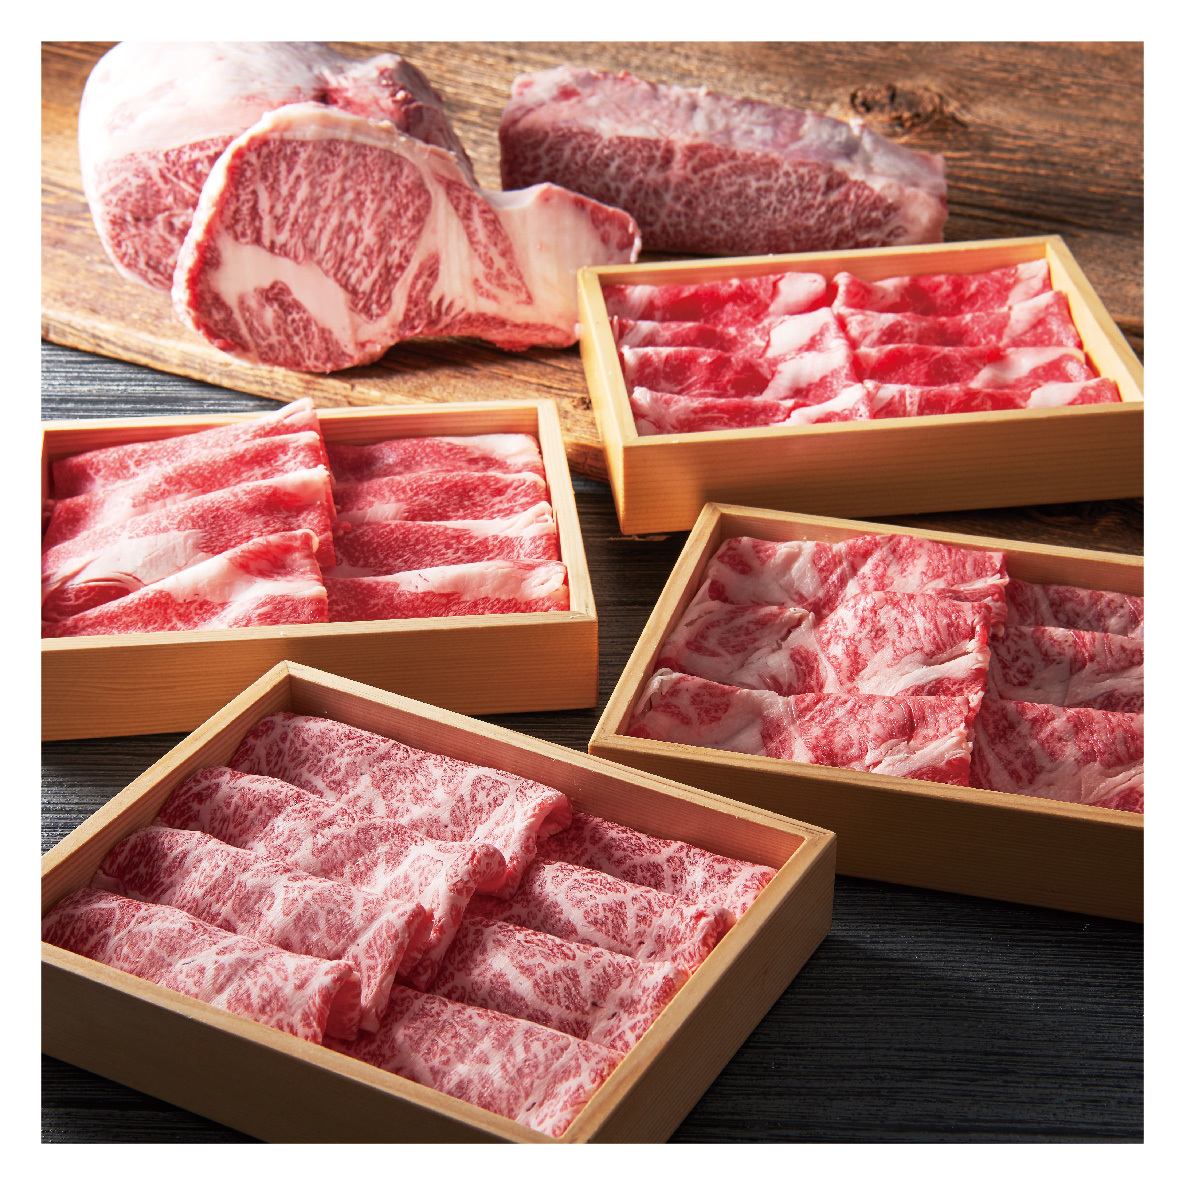 肉的厚度被仔细切片，坚持涮涮锅的最佳厚度！